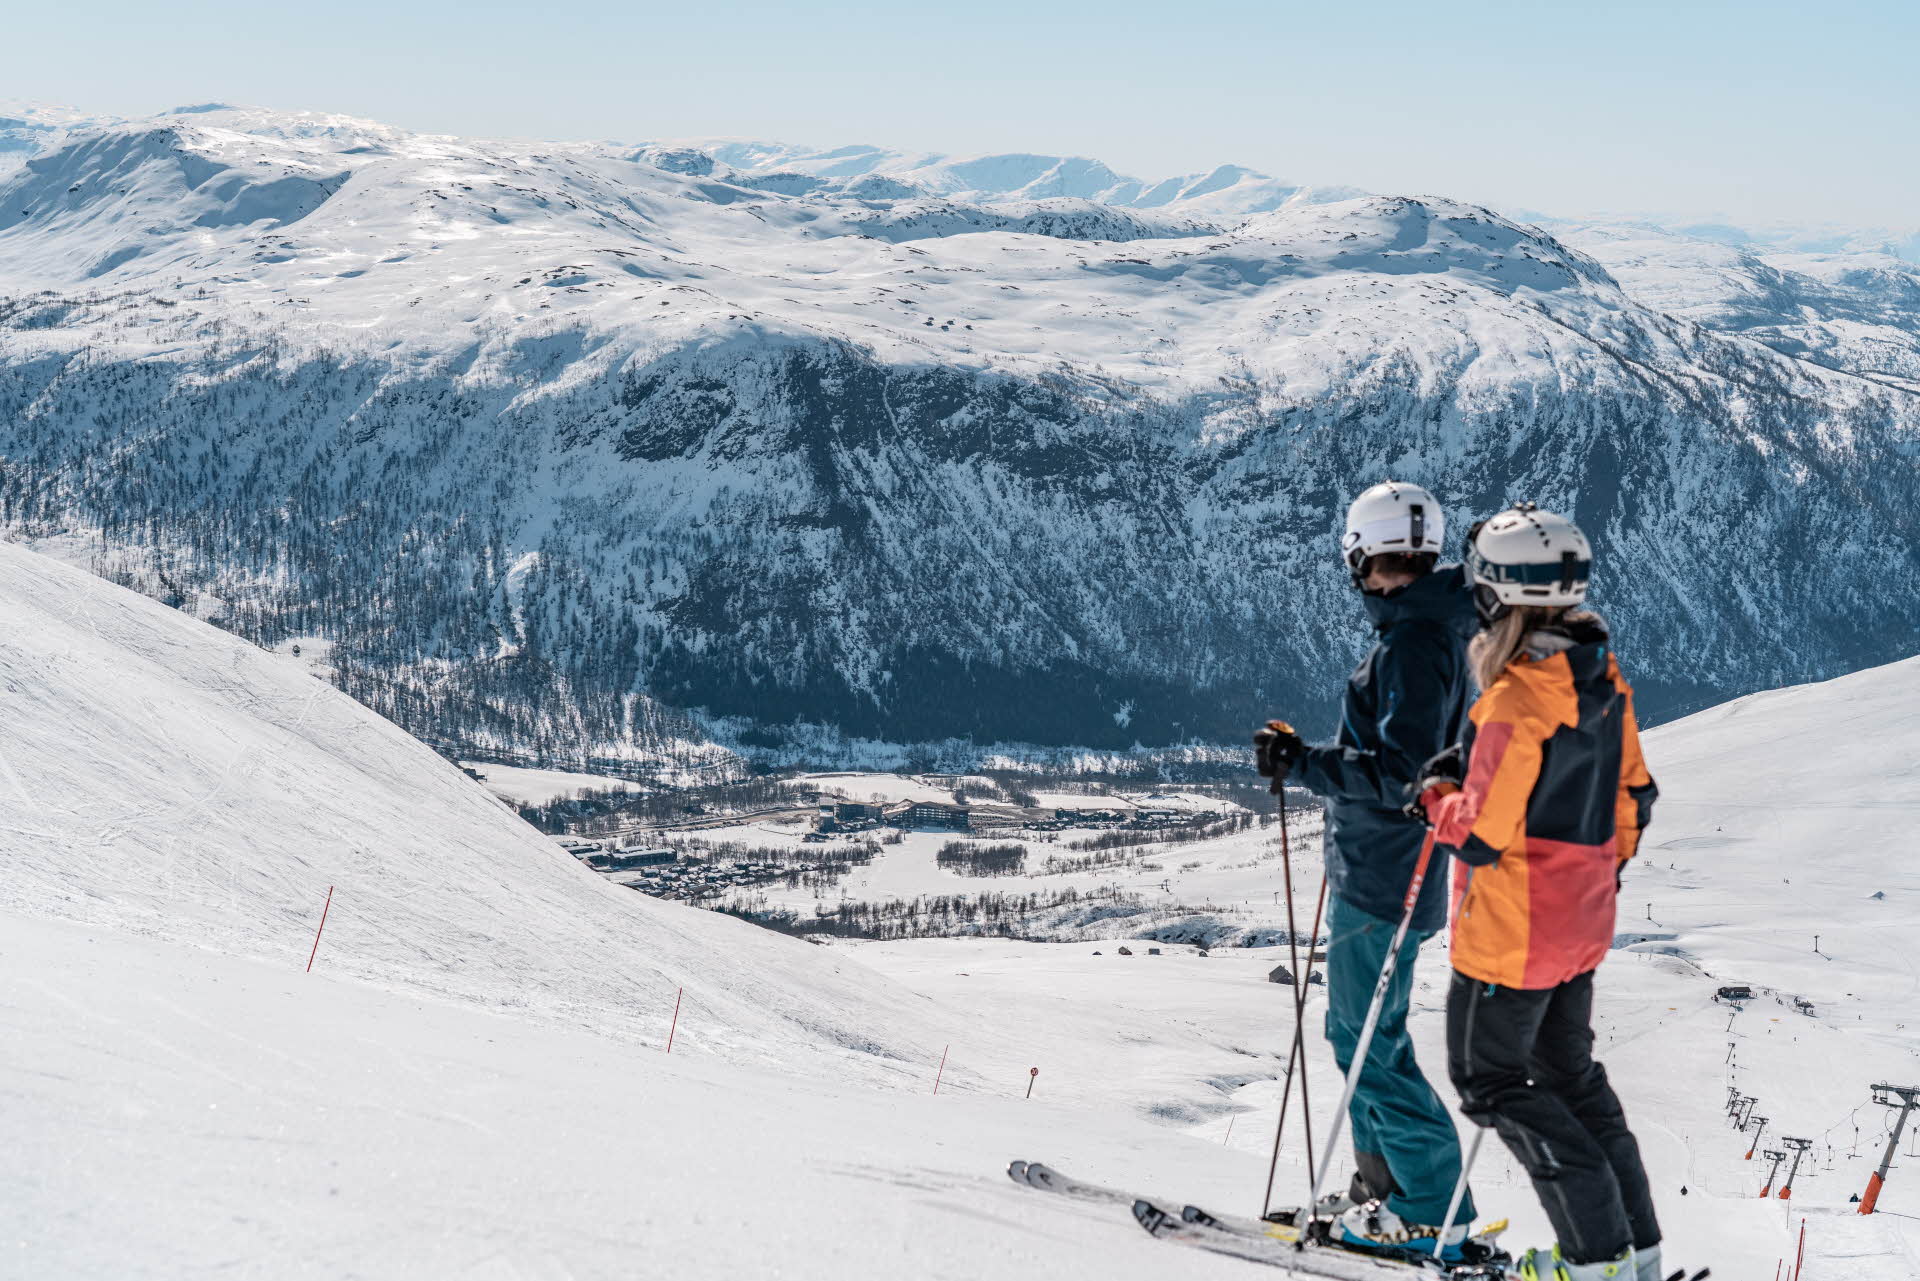 ミルクダレンの斜面と周囲の雪山を見下ろすスキーの2人